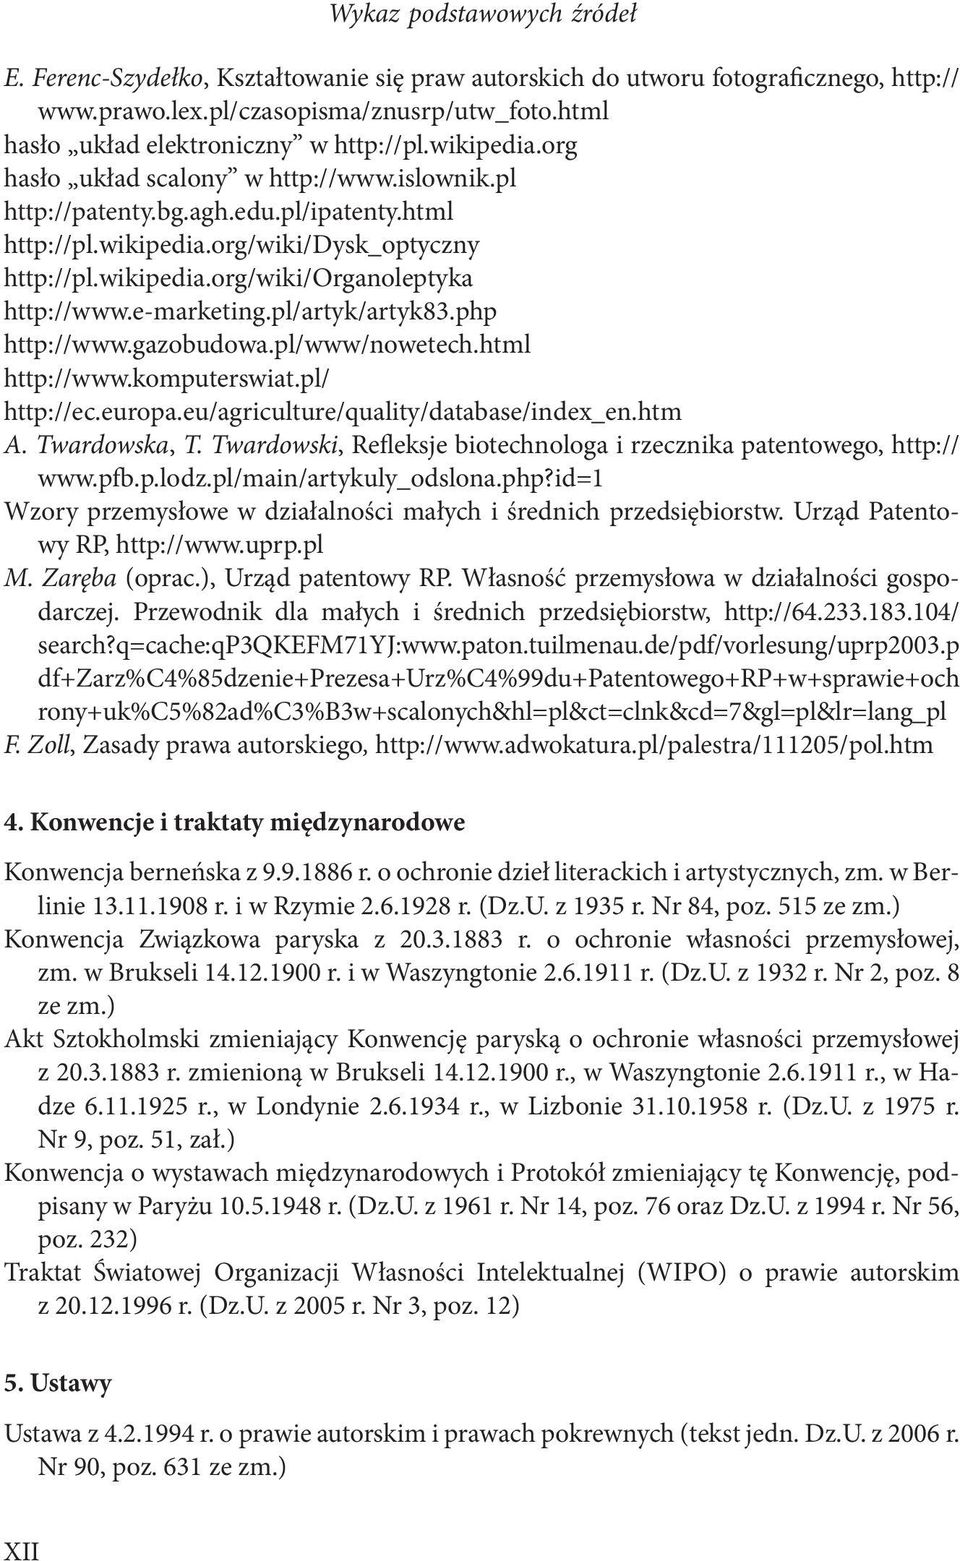 wikipedia.org/wiki/organoleptyka http://www.e-marketing.pl/artyk/artyk83.php http://www.gazobudowa.pl/www/nowetech.html http://www.komputerswiat.pl/ http://ec.europa.